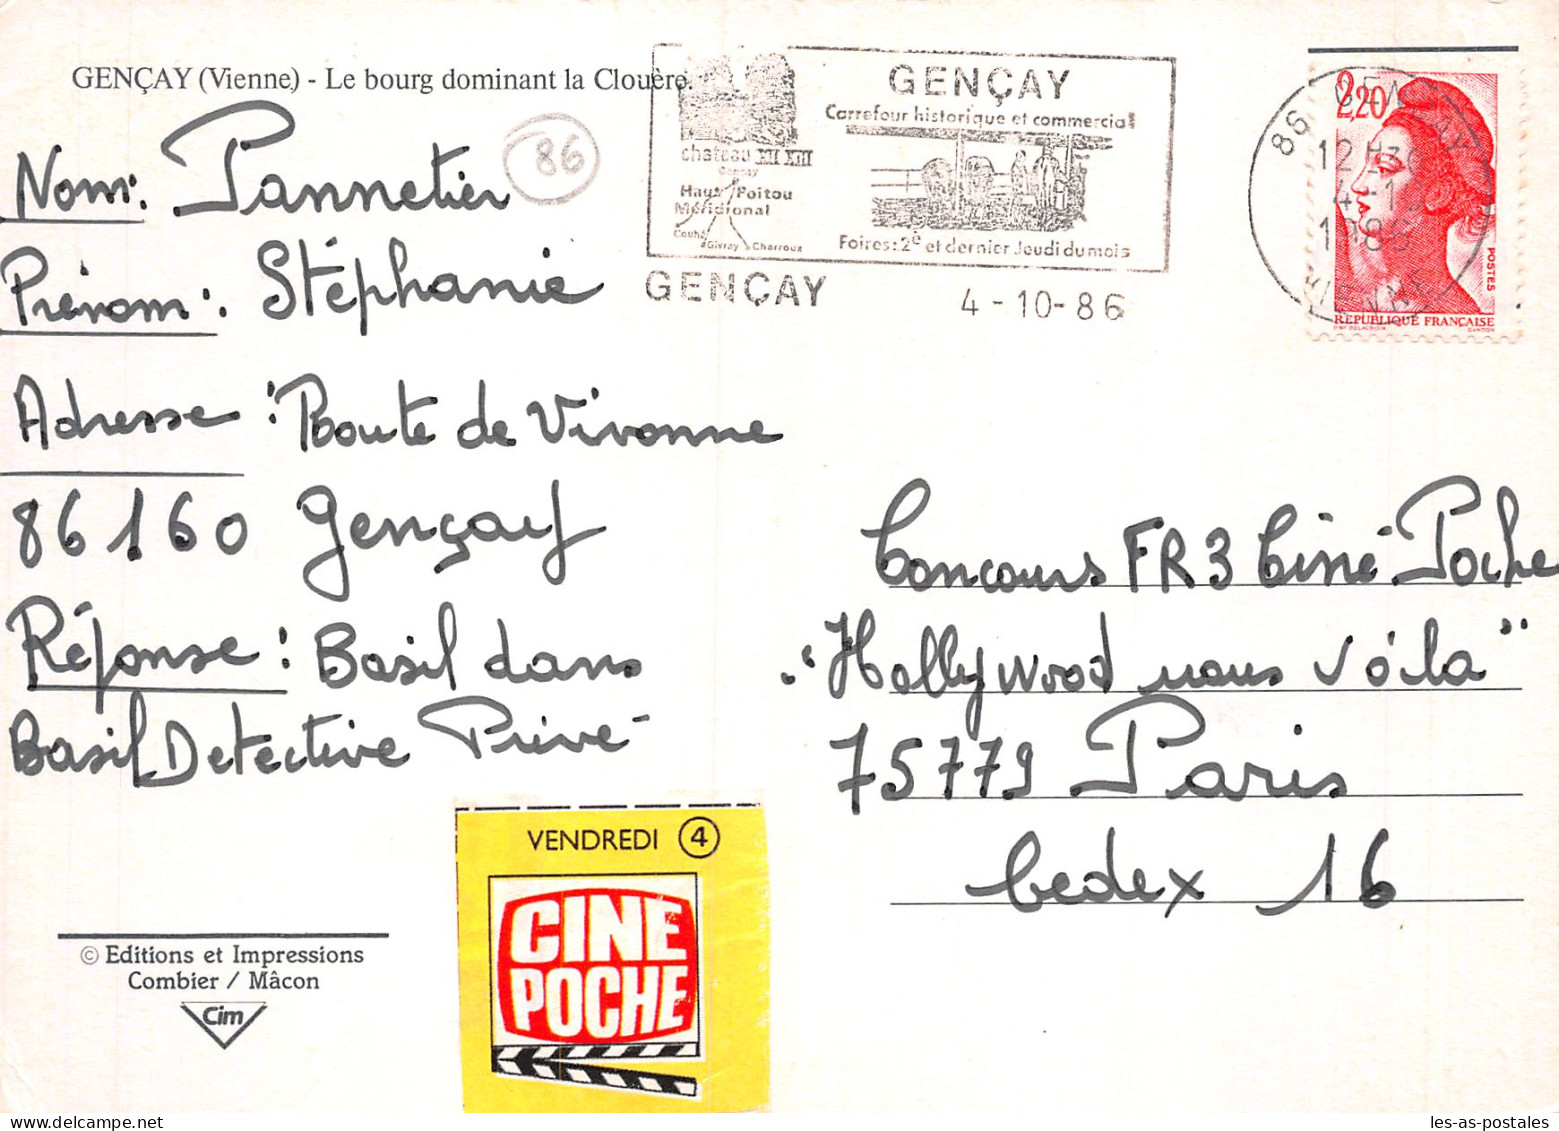 86 GENCAY LE BOURG DOMINANT LA CLOUERO - Gencay